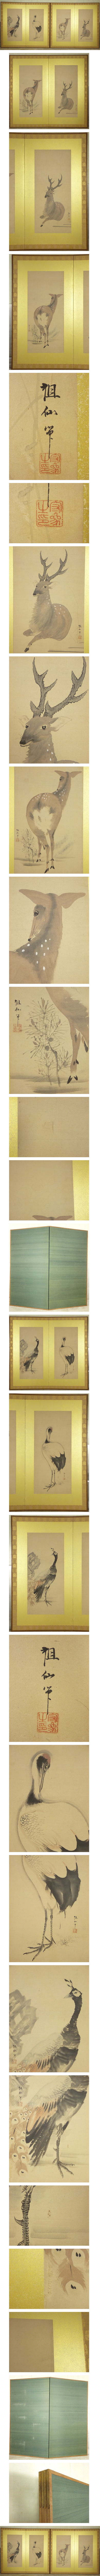 大砲候補森祖仙 孔雀 鶴 鹿の図 二枚折 屏風 一双 高さ 約174.5cm 紙本 肉筆 動物画 日本画 花鳥、鳥獣